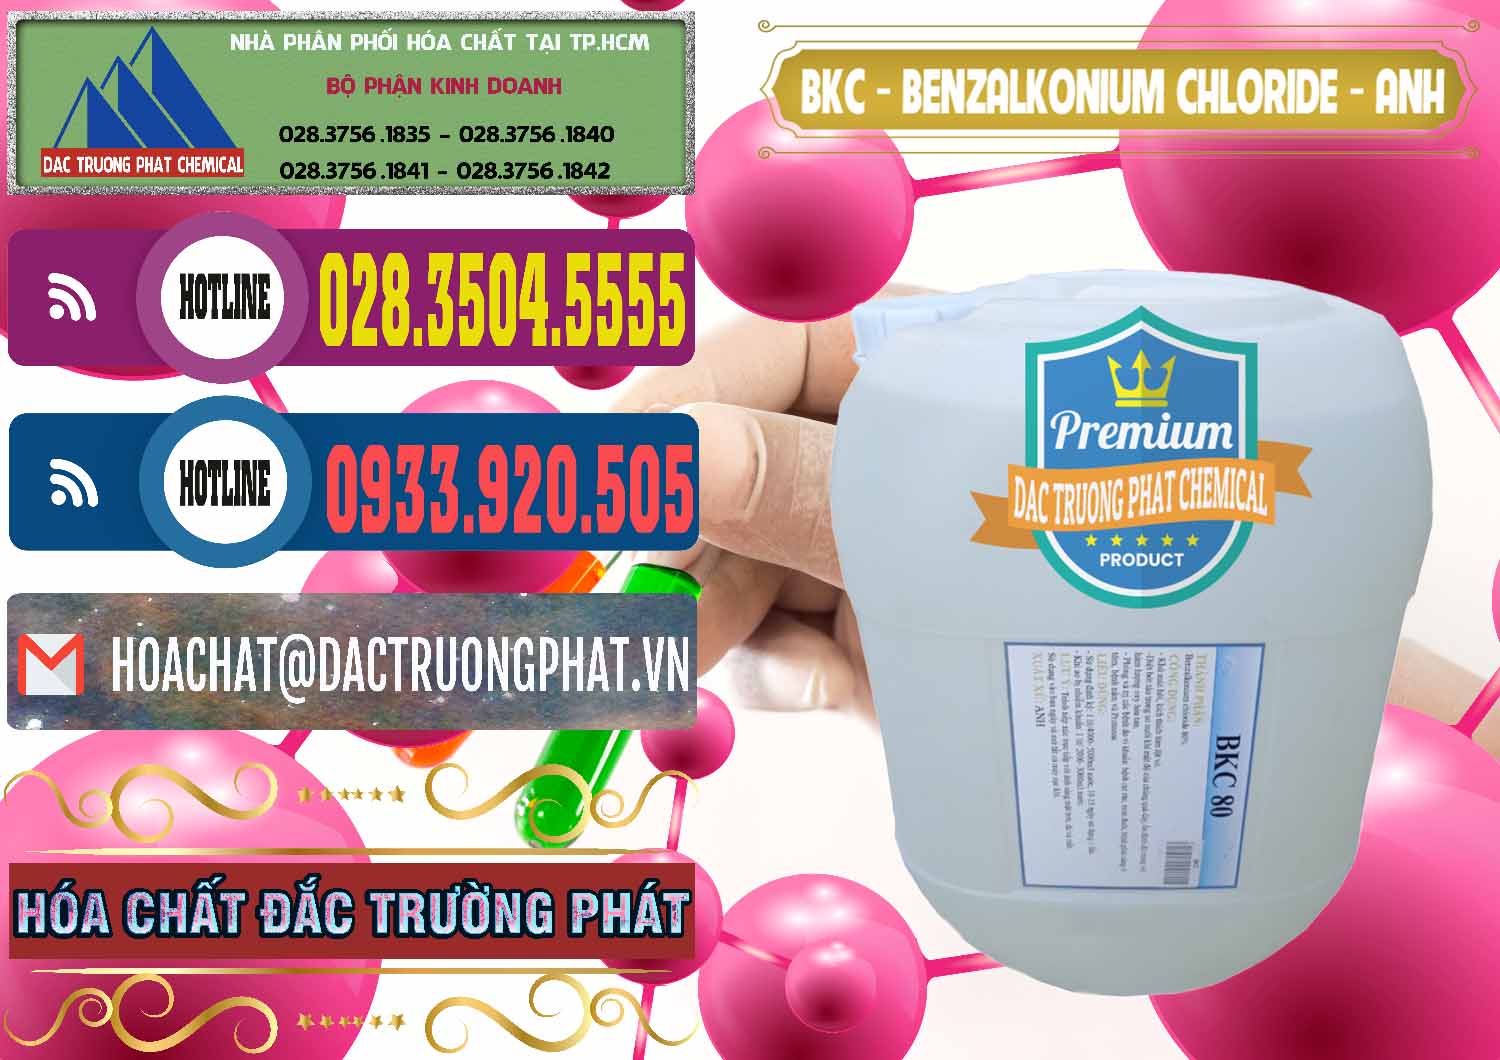 Nơi kinh doanh và bán BKC - Benzalkonium Chloride Anh Quốc Uk Kingdoms - 0415 - Chuyên cung cấp ( bán ) hóa chất tại TP.HCM - muabanhoachat.com.vn